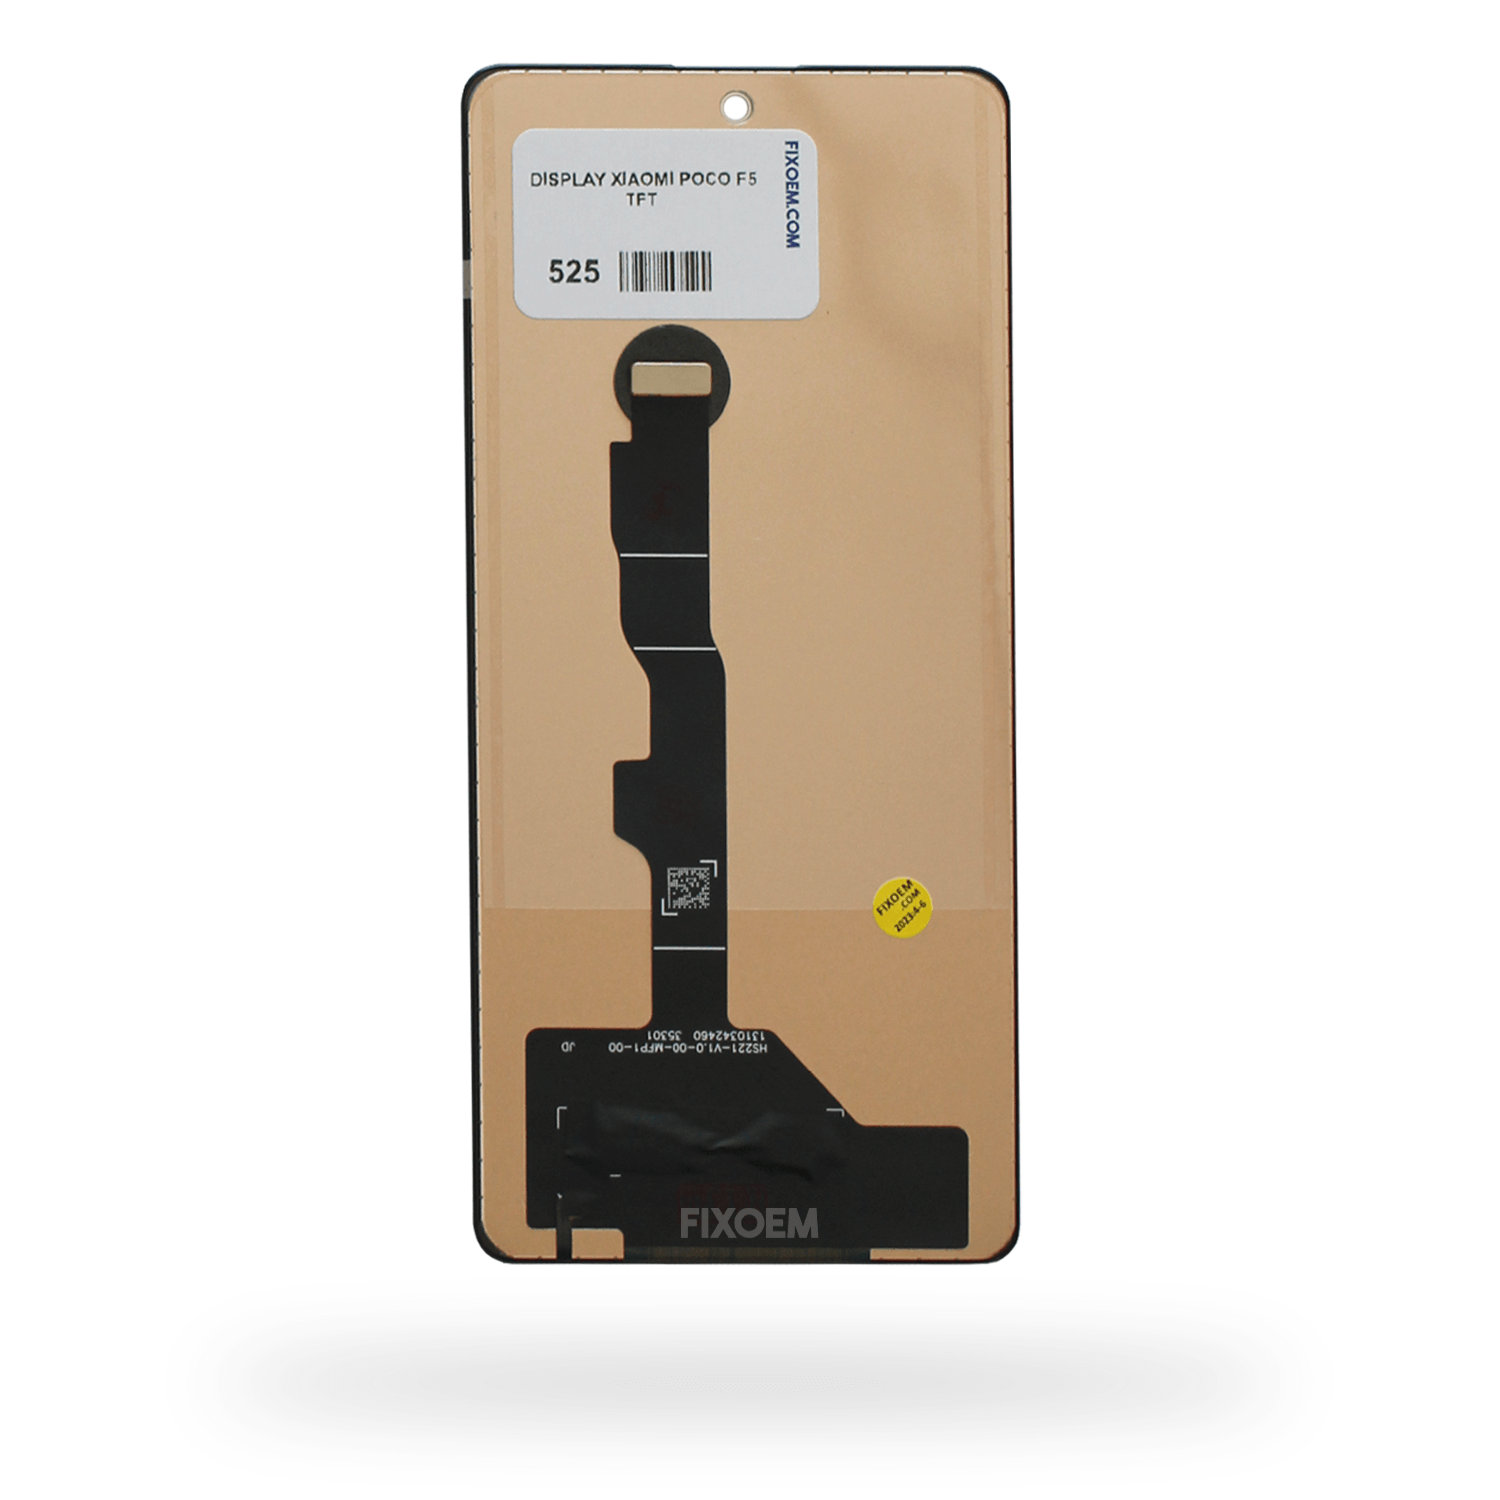 Display Xiaomi Poco F5 IPS 2023 23049pcd8g, 23049pcd8i a solo $ 950.00 Refaccion y puestos celulares, refurbish y microelectronica.- FixOEM